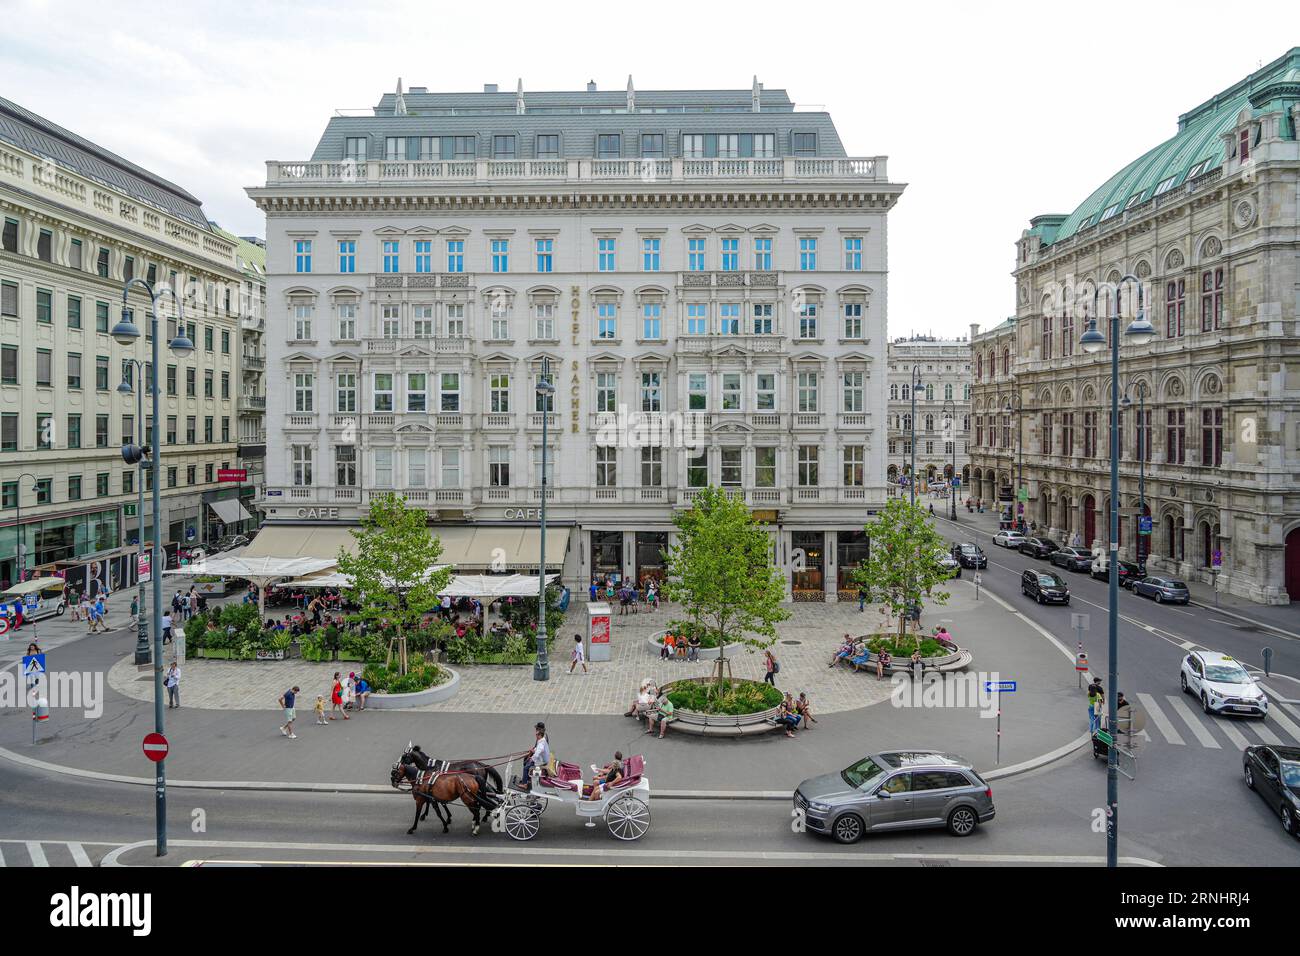 Wien, Autriche - 28 août 2023 : l'hôtel Sacher est un hôtel de luxe près de l'Opéra national de Vienne. Il est célèbre pour la Sachertorte. Banque D'Images